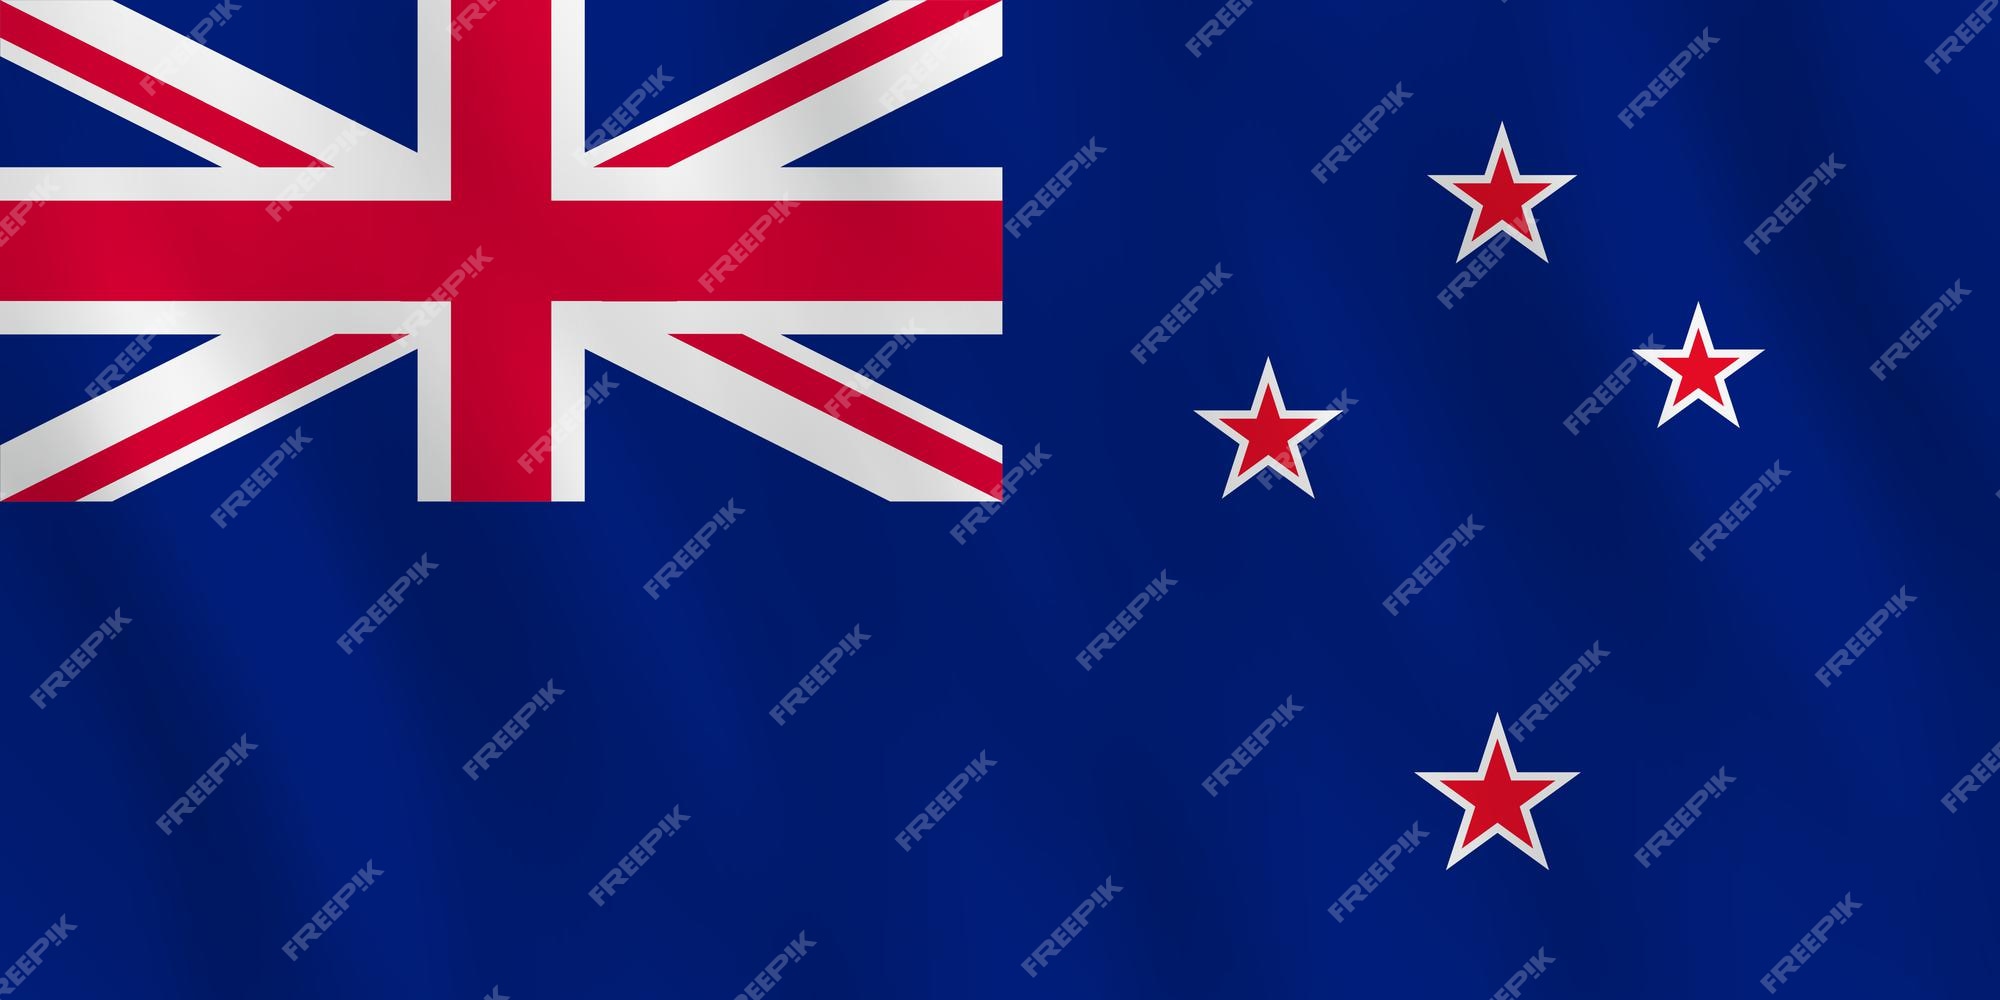 Hiệu ứng cờ phất của lá cờ New Zealand sẽ khiến bạn phát cuồng với sự đẹp đẽ và giản đơn. Hãy tìm thấy những khoảnh khắc tuyệt vời nhất của New Zealand thông qua màn phát sóng lá cờ của họ.